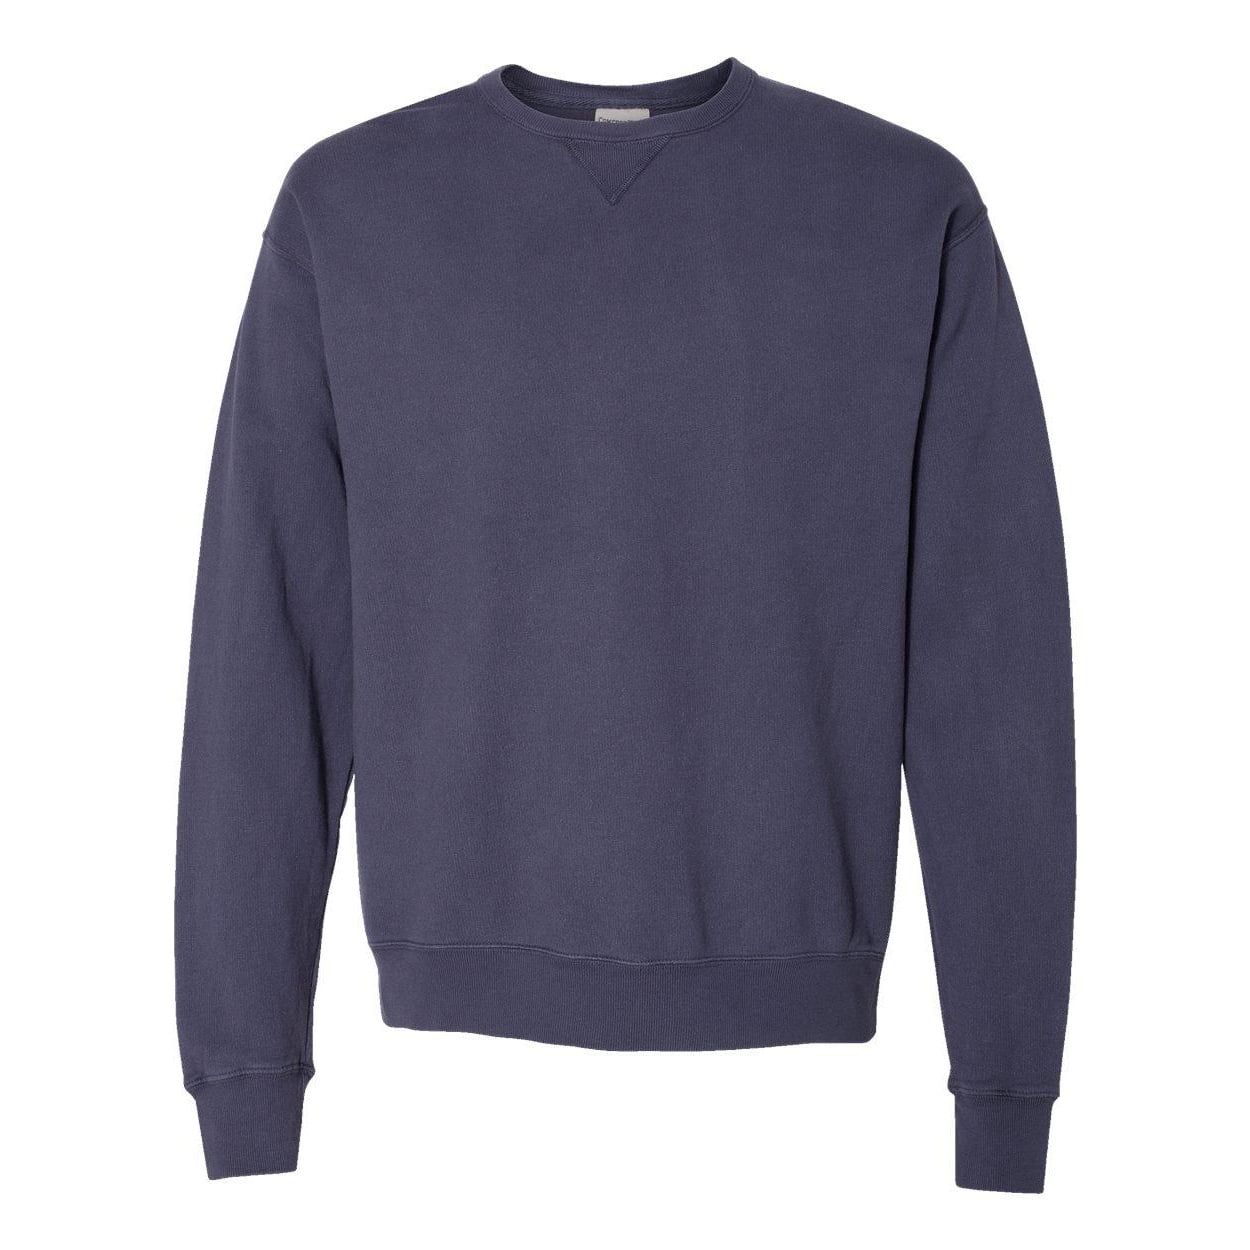 Hanes Men's ComfortWash Garment Dyed Fleece Sweatshirt - Walmart.com